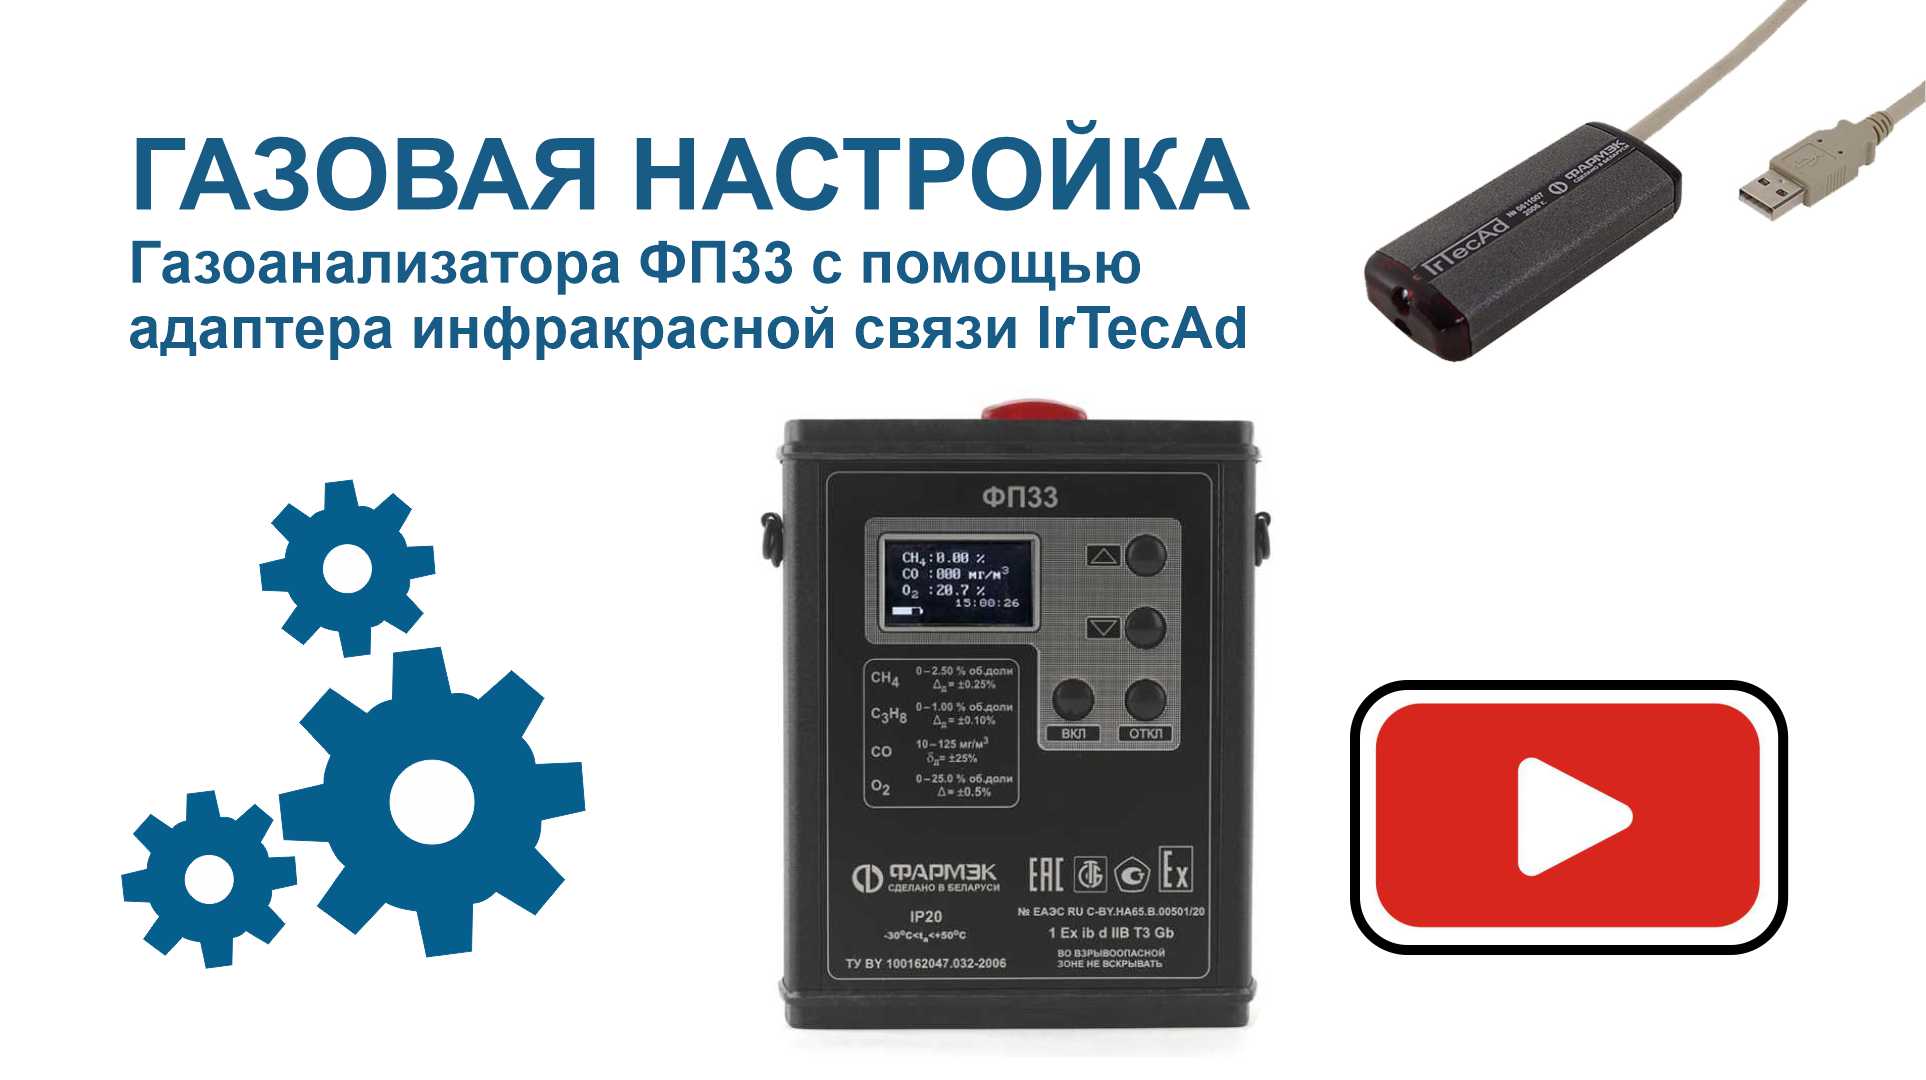 ГАЗОВАЯ НАСТРОЙКА | Газоанализатор ФП33 и адаптер инфракрасной связи IrTecAd